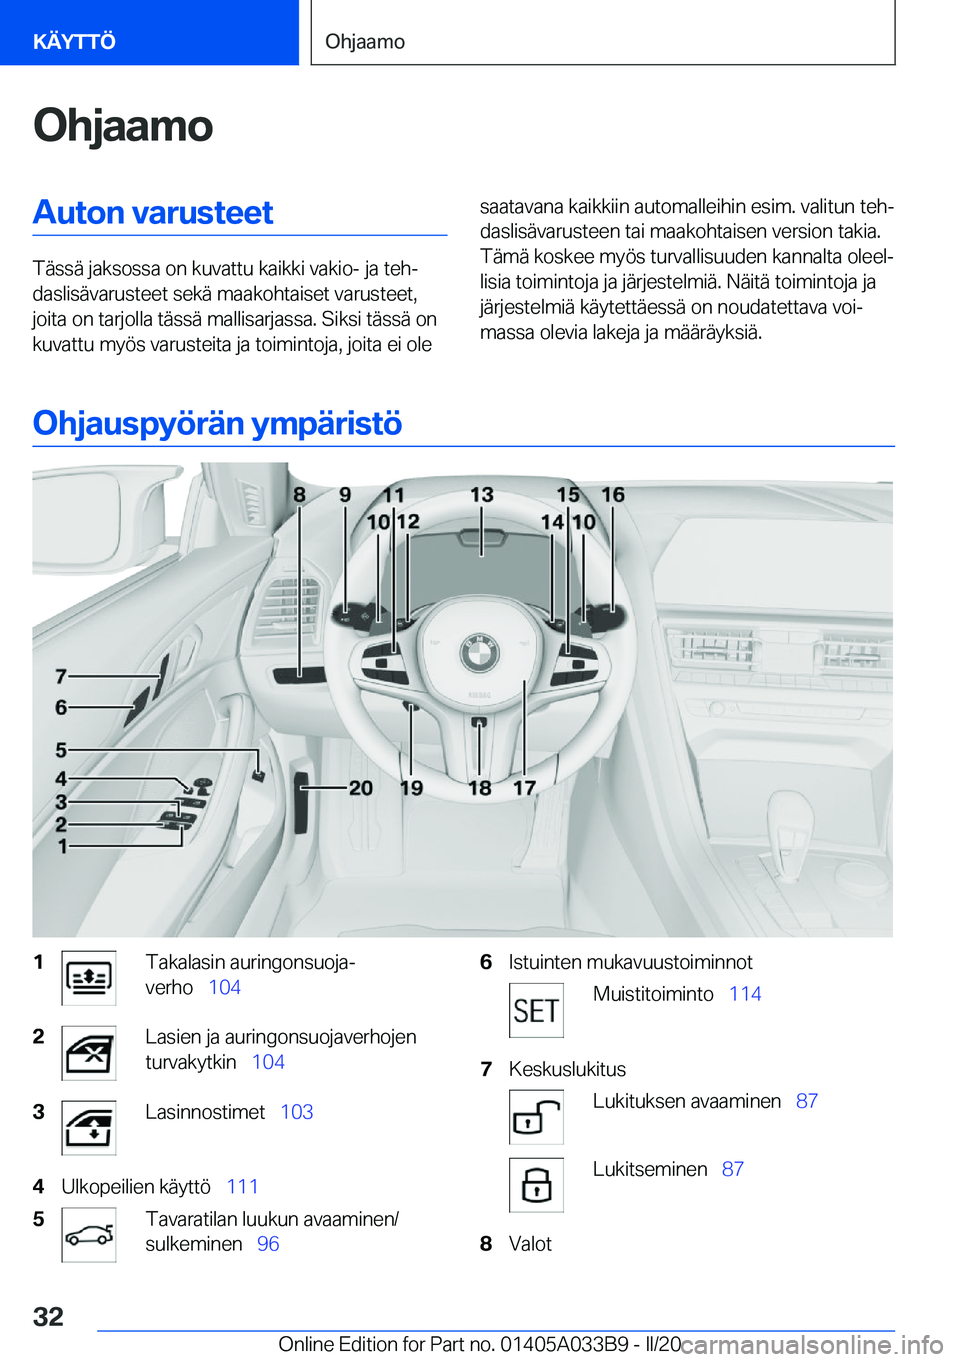 BMW M8 GRAN COUPE 2020  Omistajan Käsikirja (in Finnish) �O�h�j�a�a�m�o�A�u�t�o�n��v�a�r�u�s�t�e�e�t
�T�